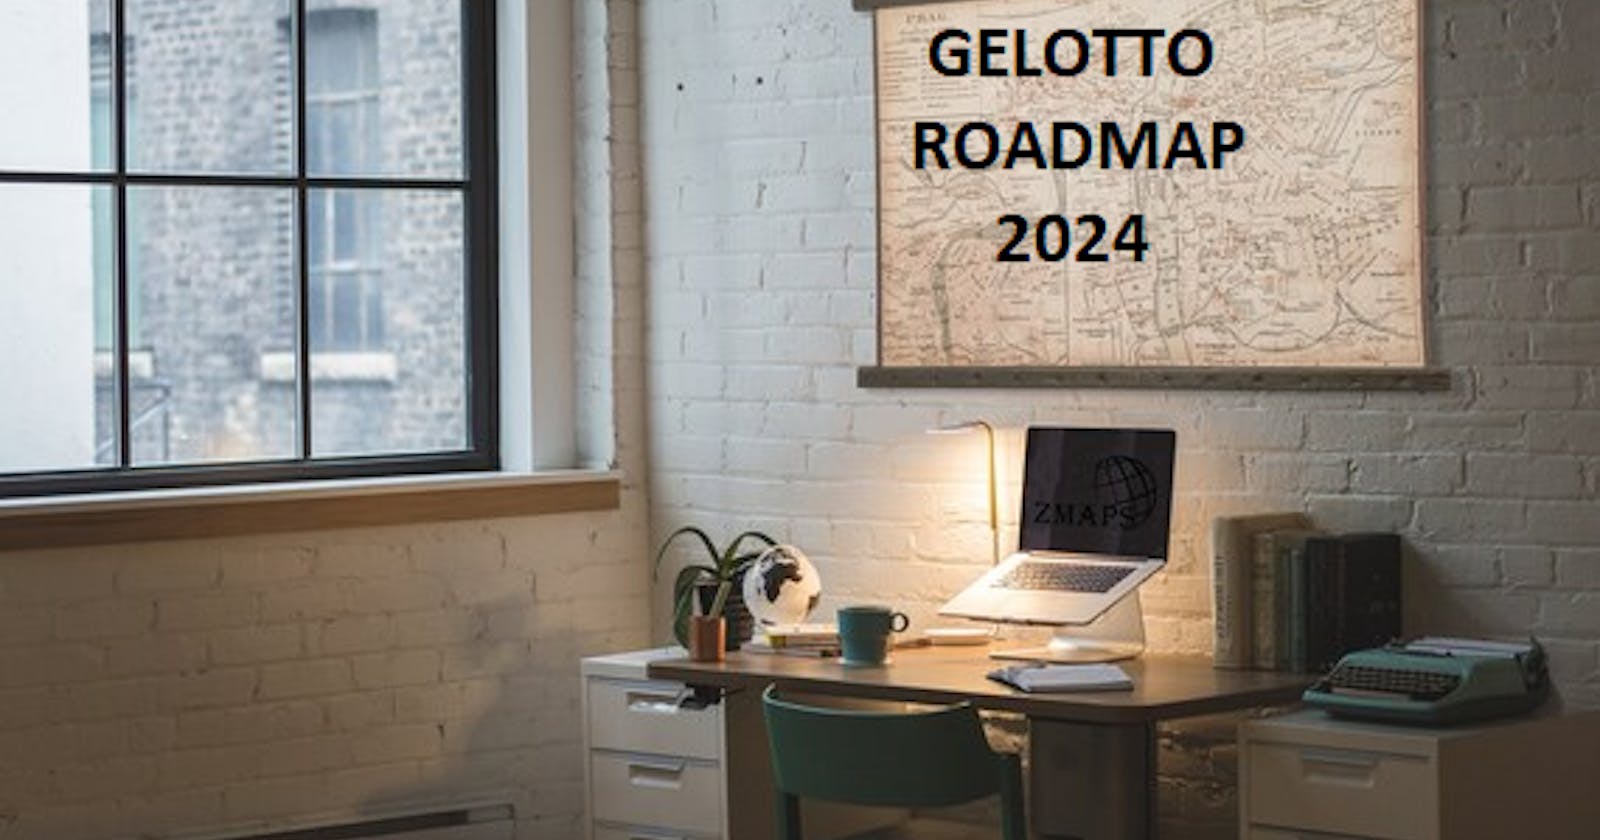 Gelotto 2024: A Retrospective and Future Roadmap